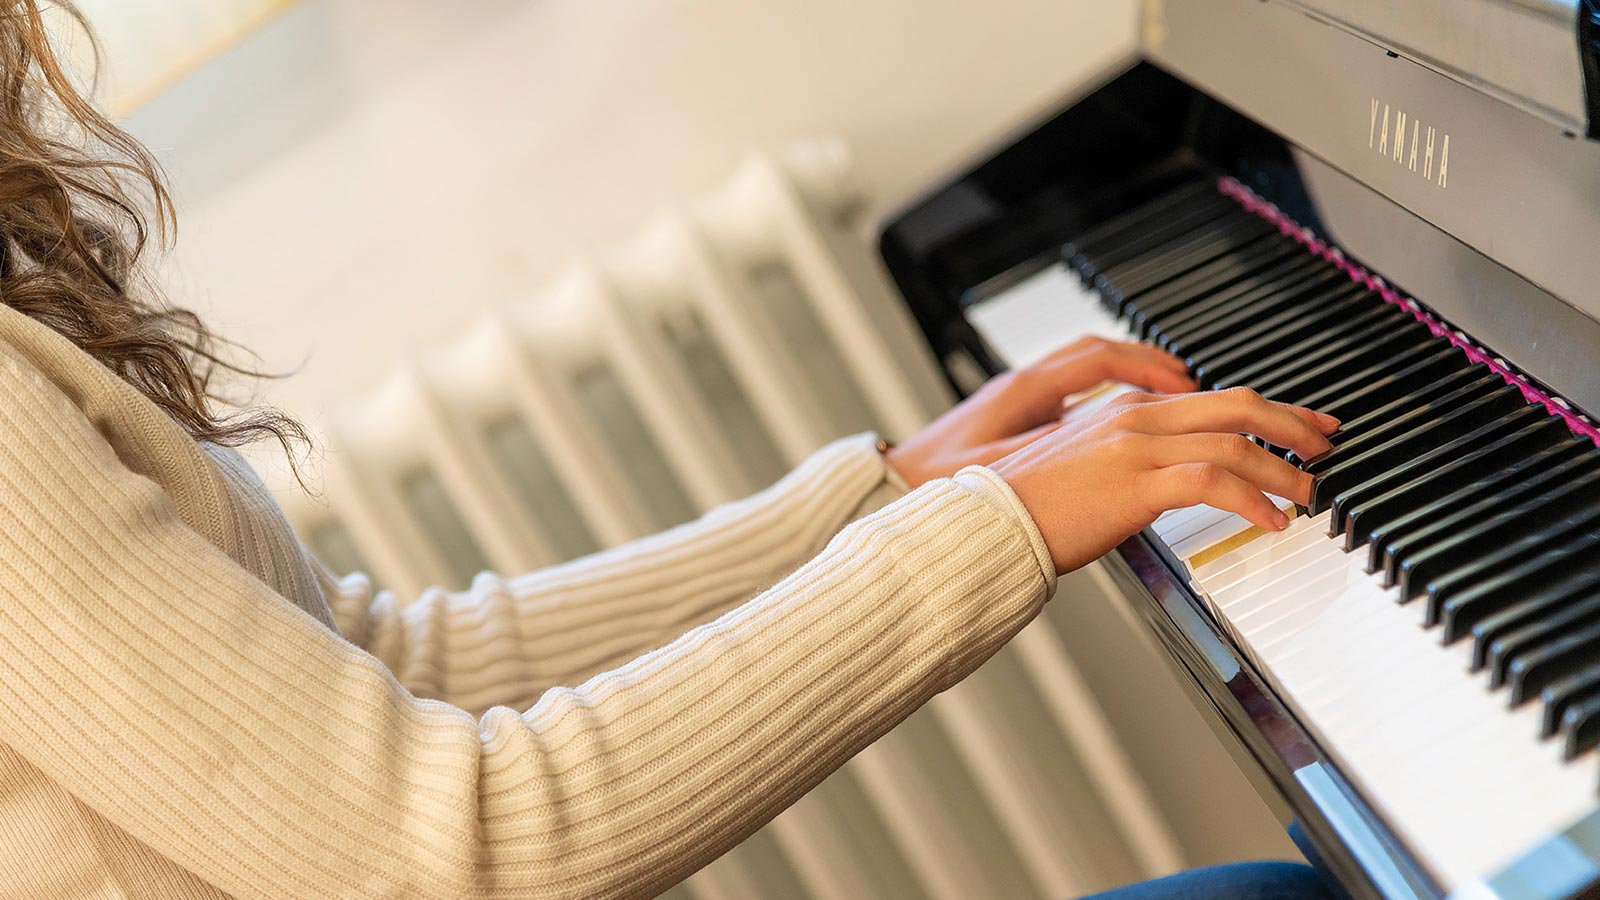 Ausschnitt aus den Händen eines Schülers beim Üben am Klavier